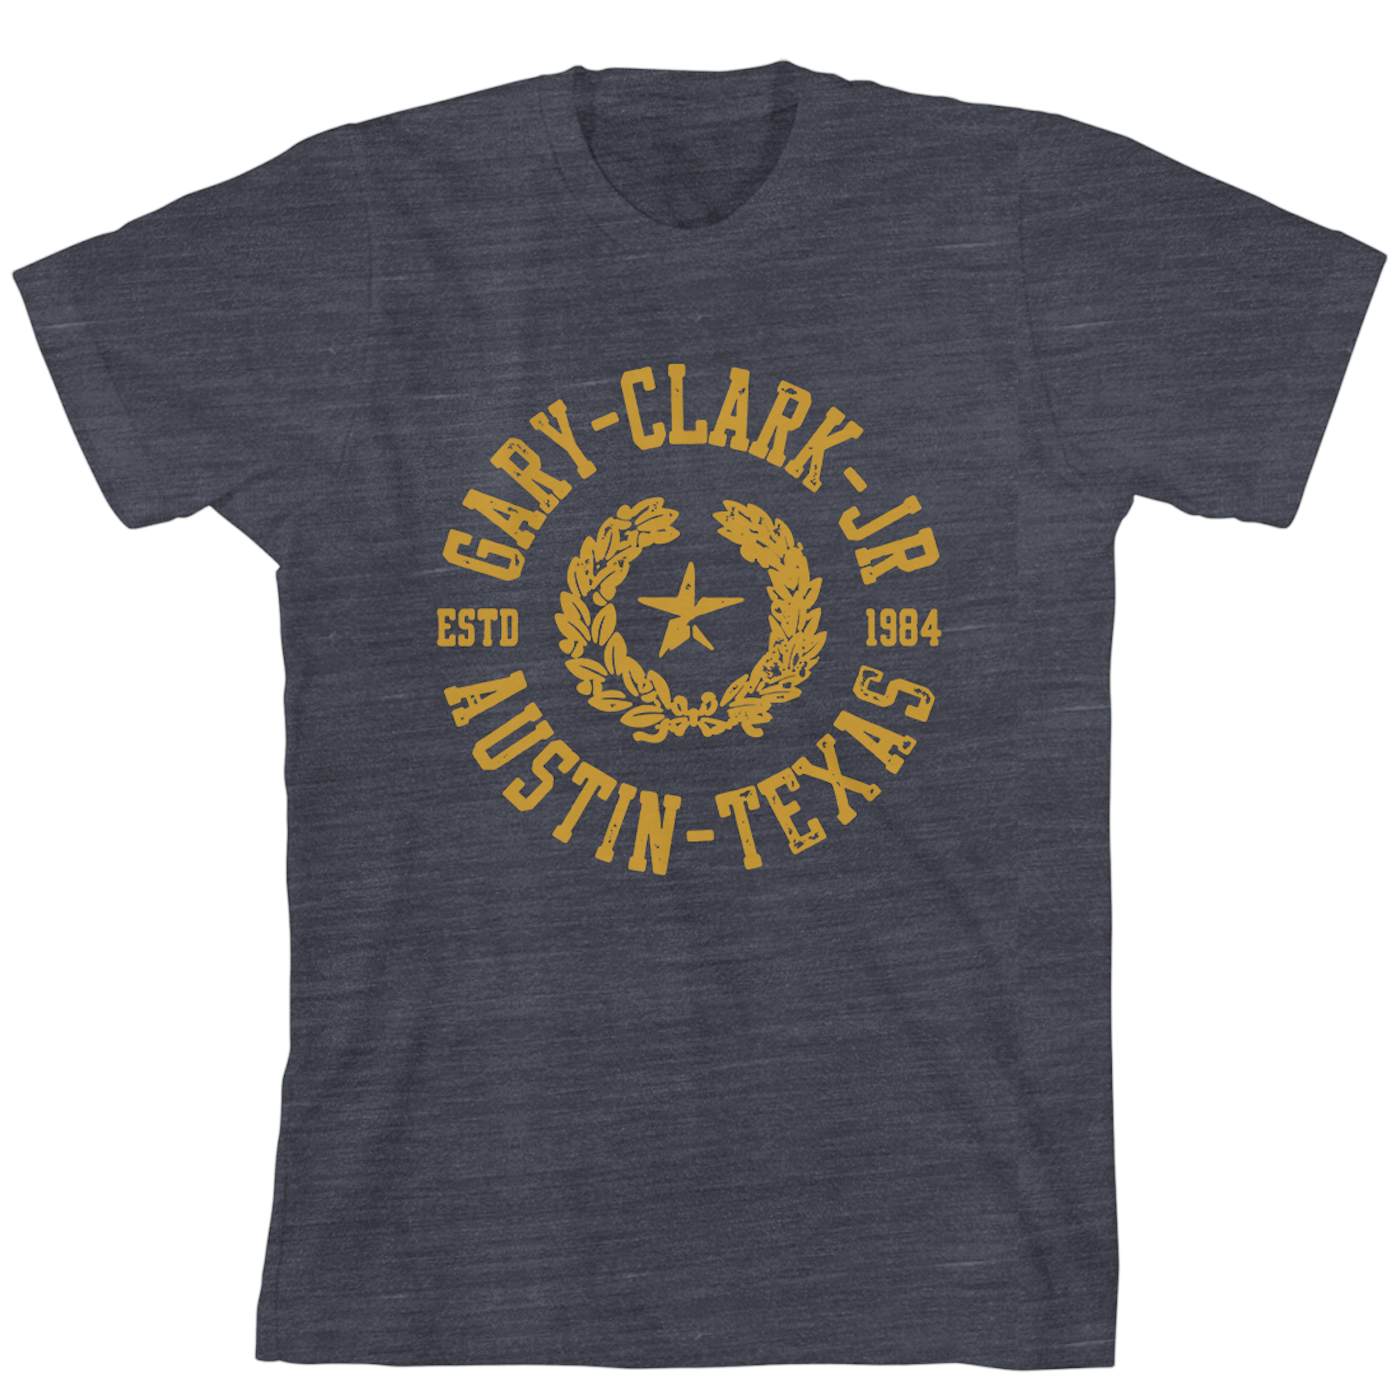 Gary Clark Jr. Seal Summer 2014 Tour T-Shirt